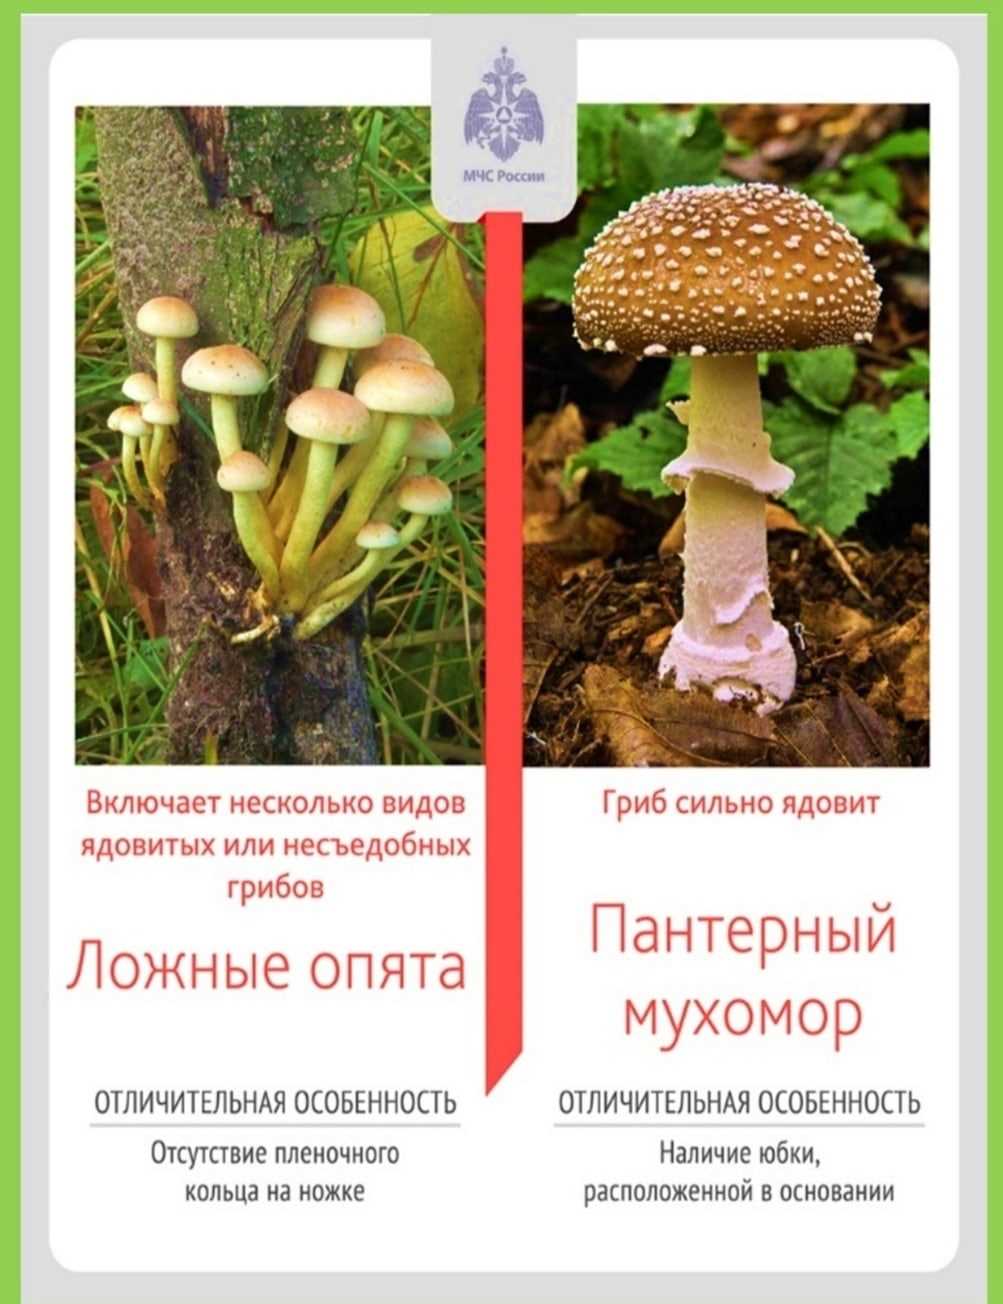 Опасные грибы, которые можно встретить в лесах Воронежской области — смотрите фото и узнавайте их названия!